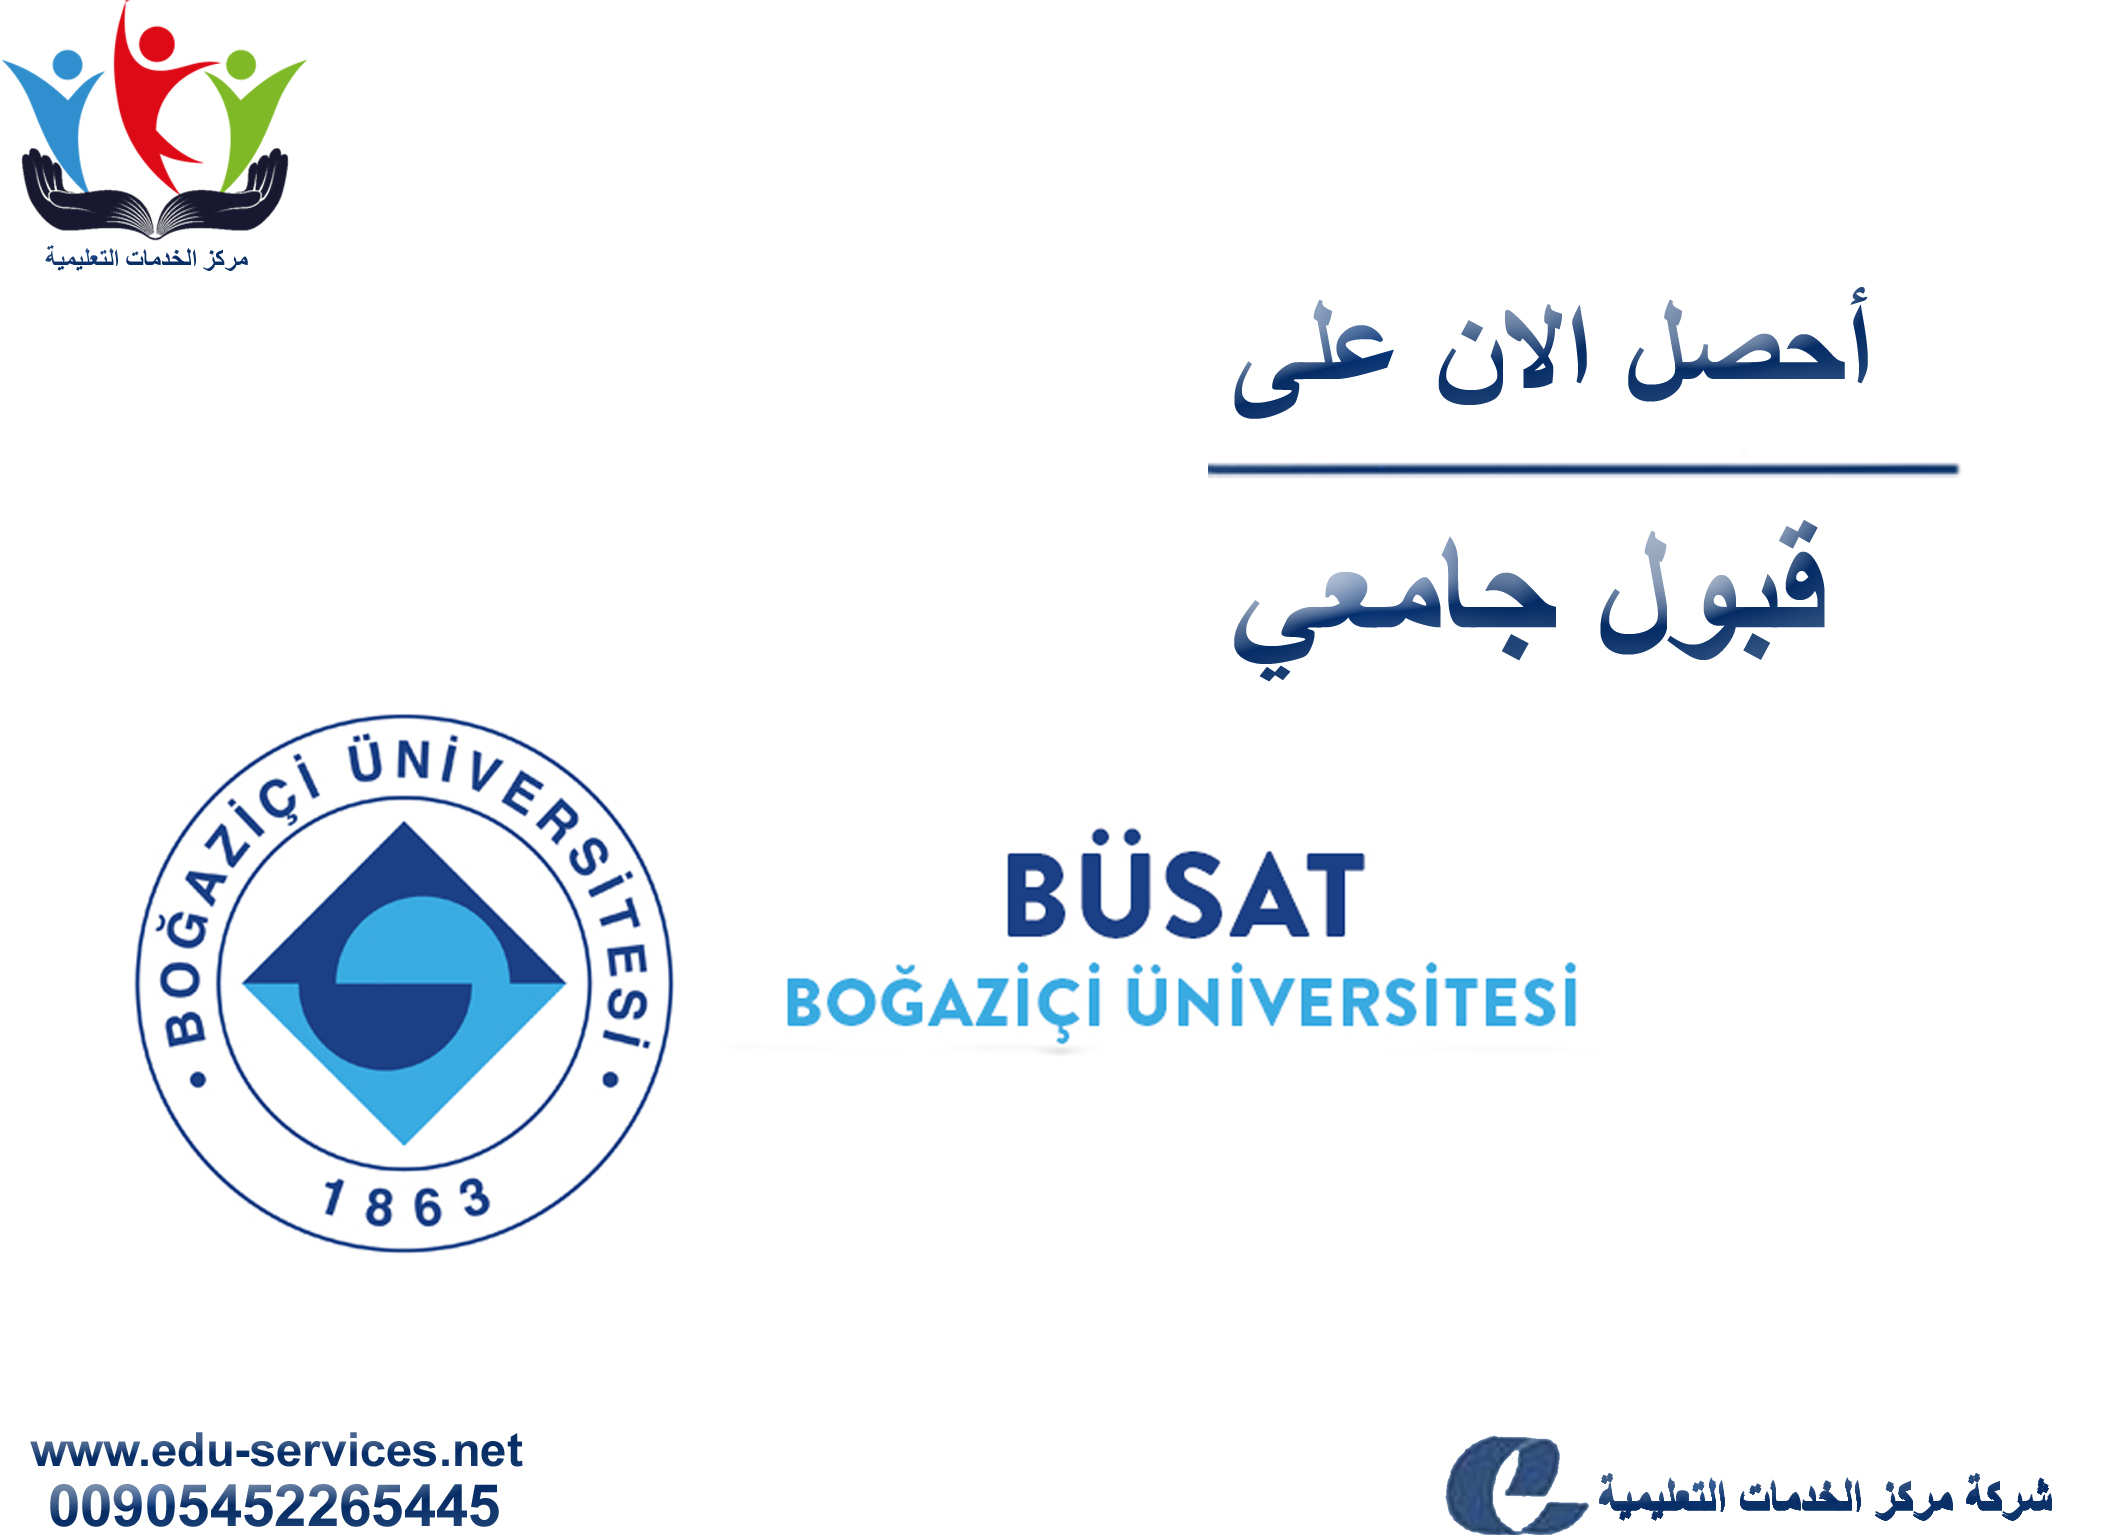 افتتاح التسجيل على جامعة بوغازيتشي للدراسات العليا للفصل الدراسي الثاني 2019/2018